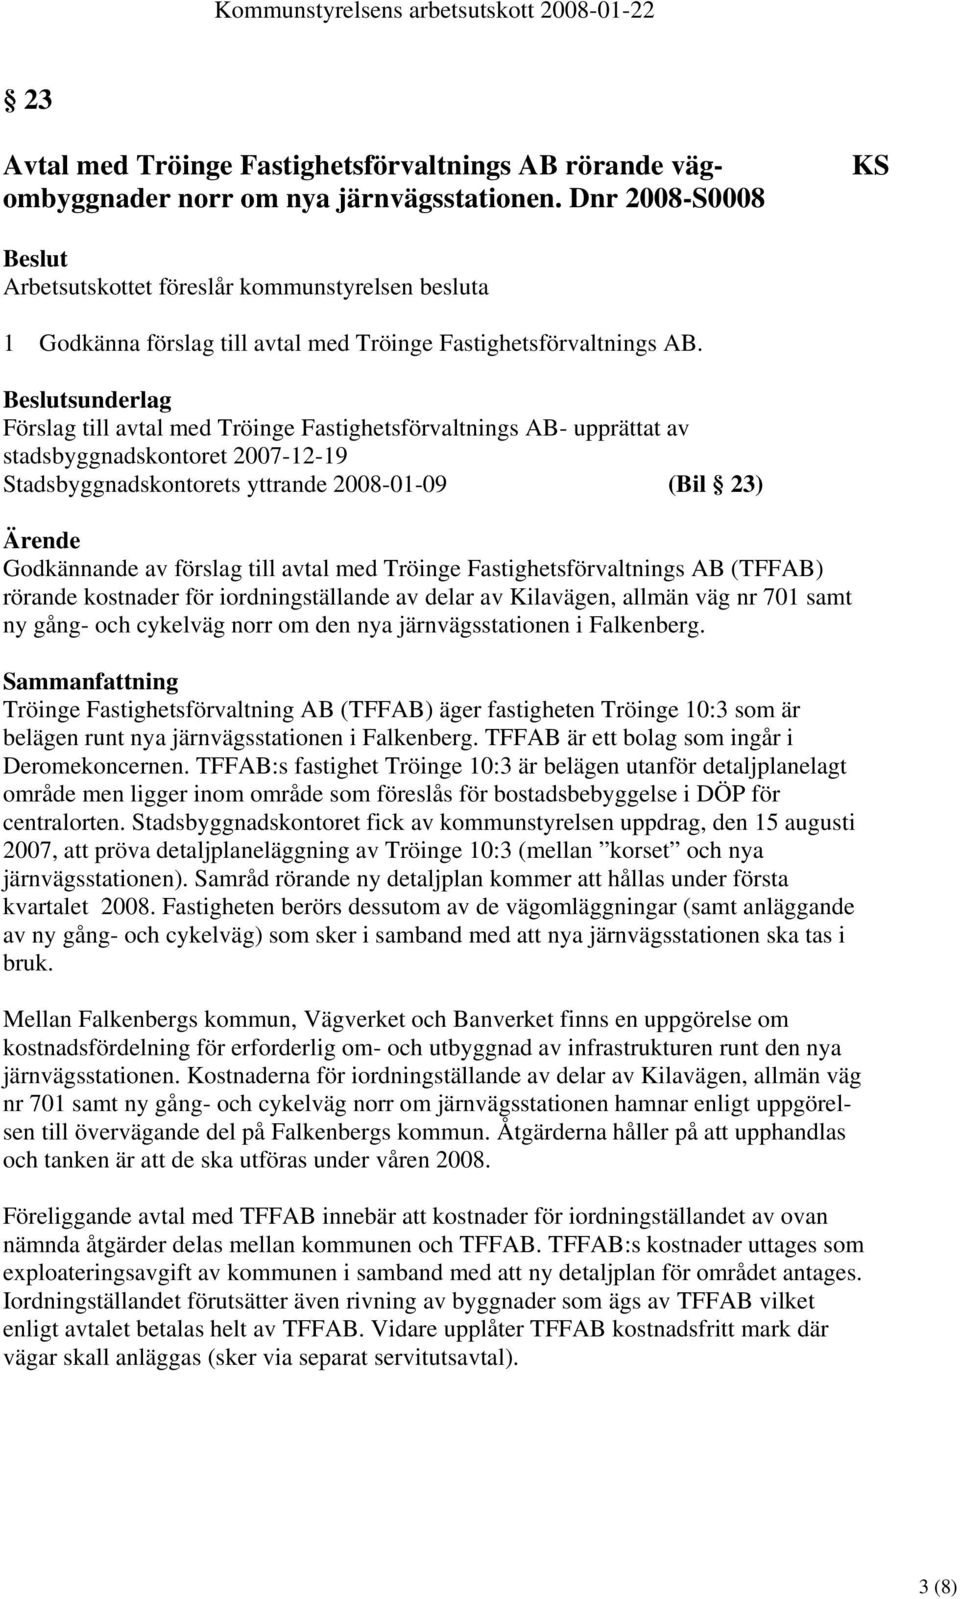 sunderlag Förslag till avtal med Tröinge Fastighetsförvaltnings AB- upprättat av stadsbyggnadskontoret 2007-12-19 Stadsbyggnadskontorets yttrande 2008-01-09 (Bil 23) Godkännande av förslag till avtal